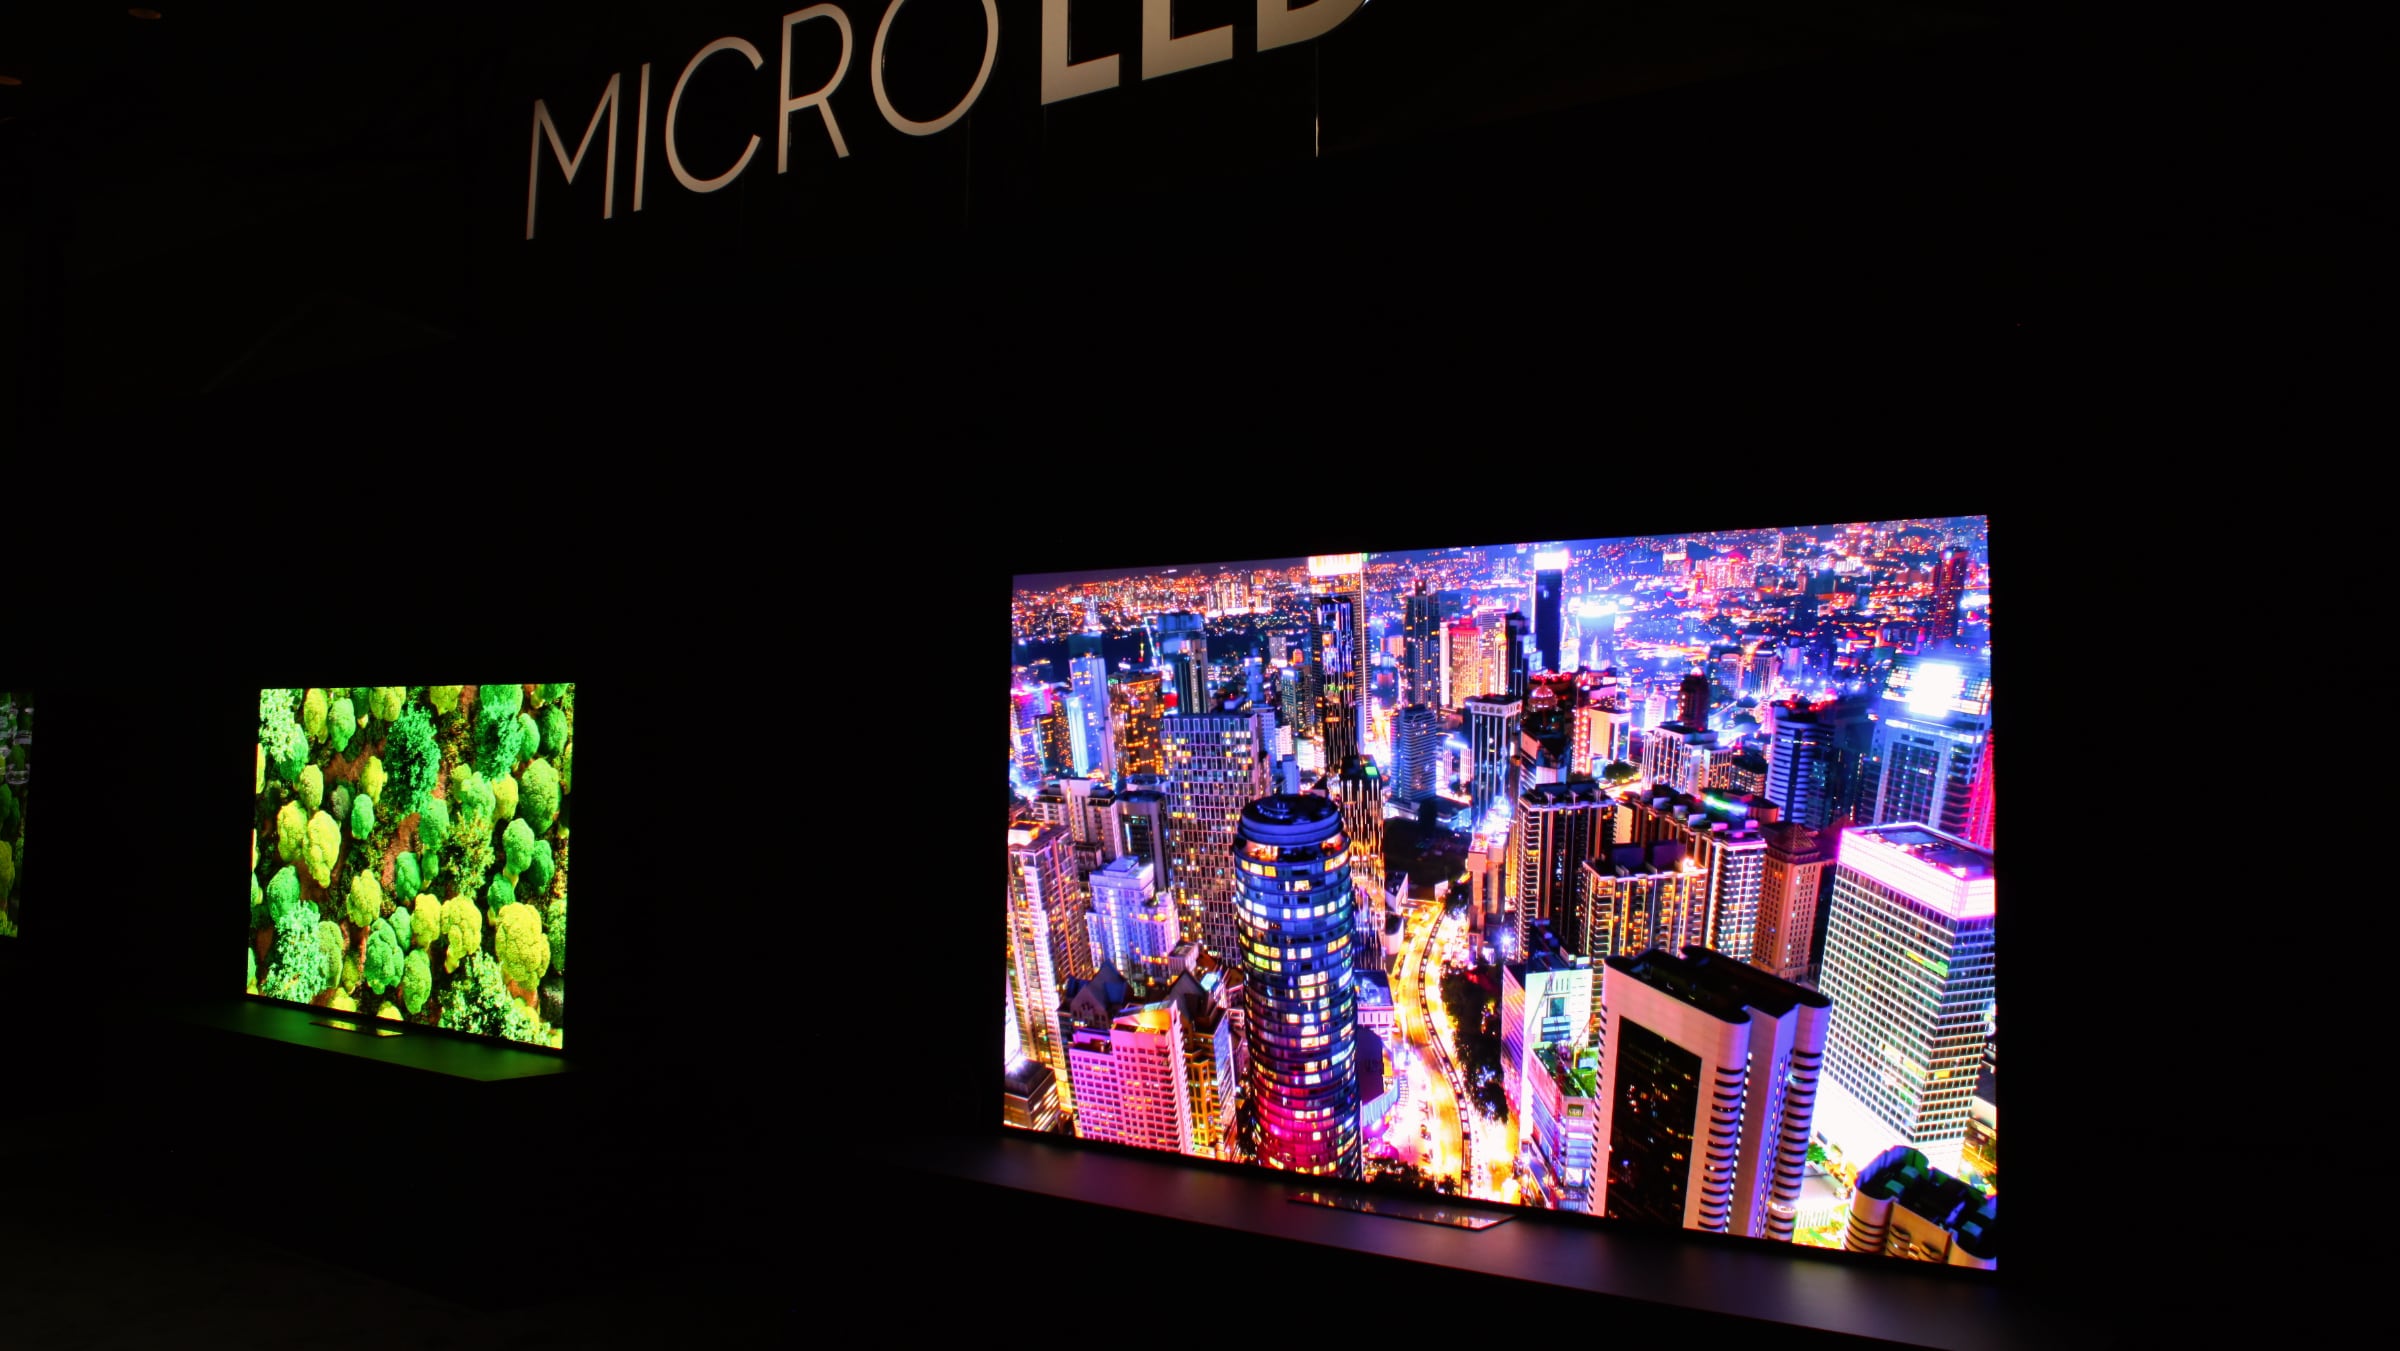 Gå en tur onsdag Ideelt Samsungs nye 89-114" microLED TV forbliver uforholdsmæssigt dyre i 2022 -  FlatpanelsDK